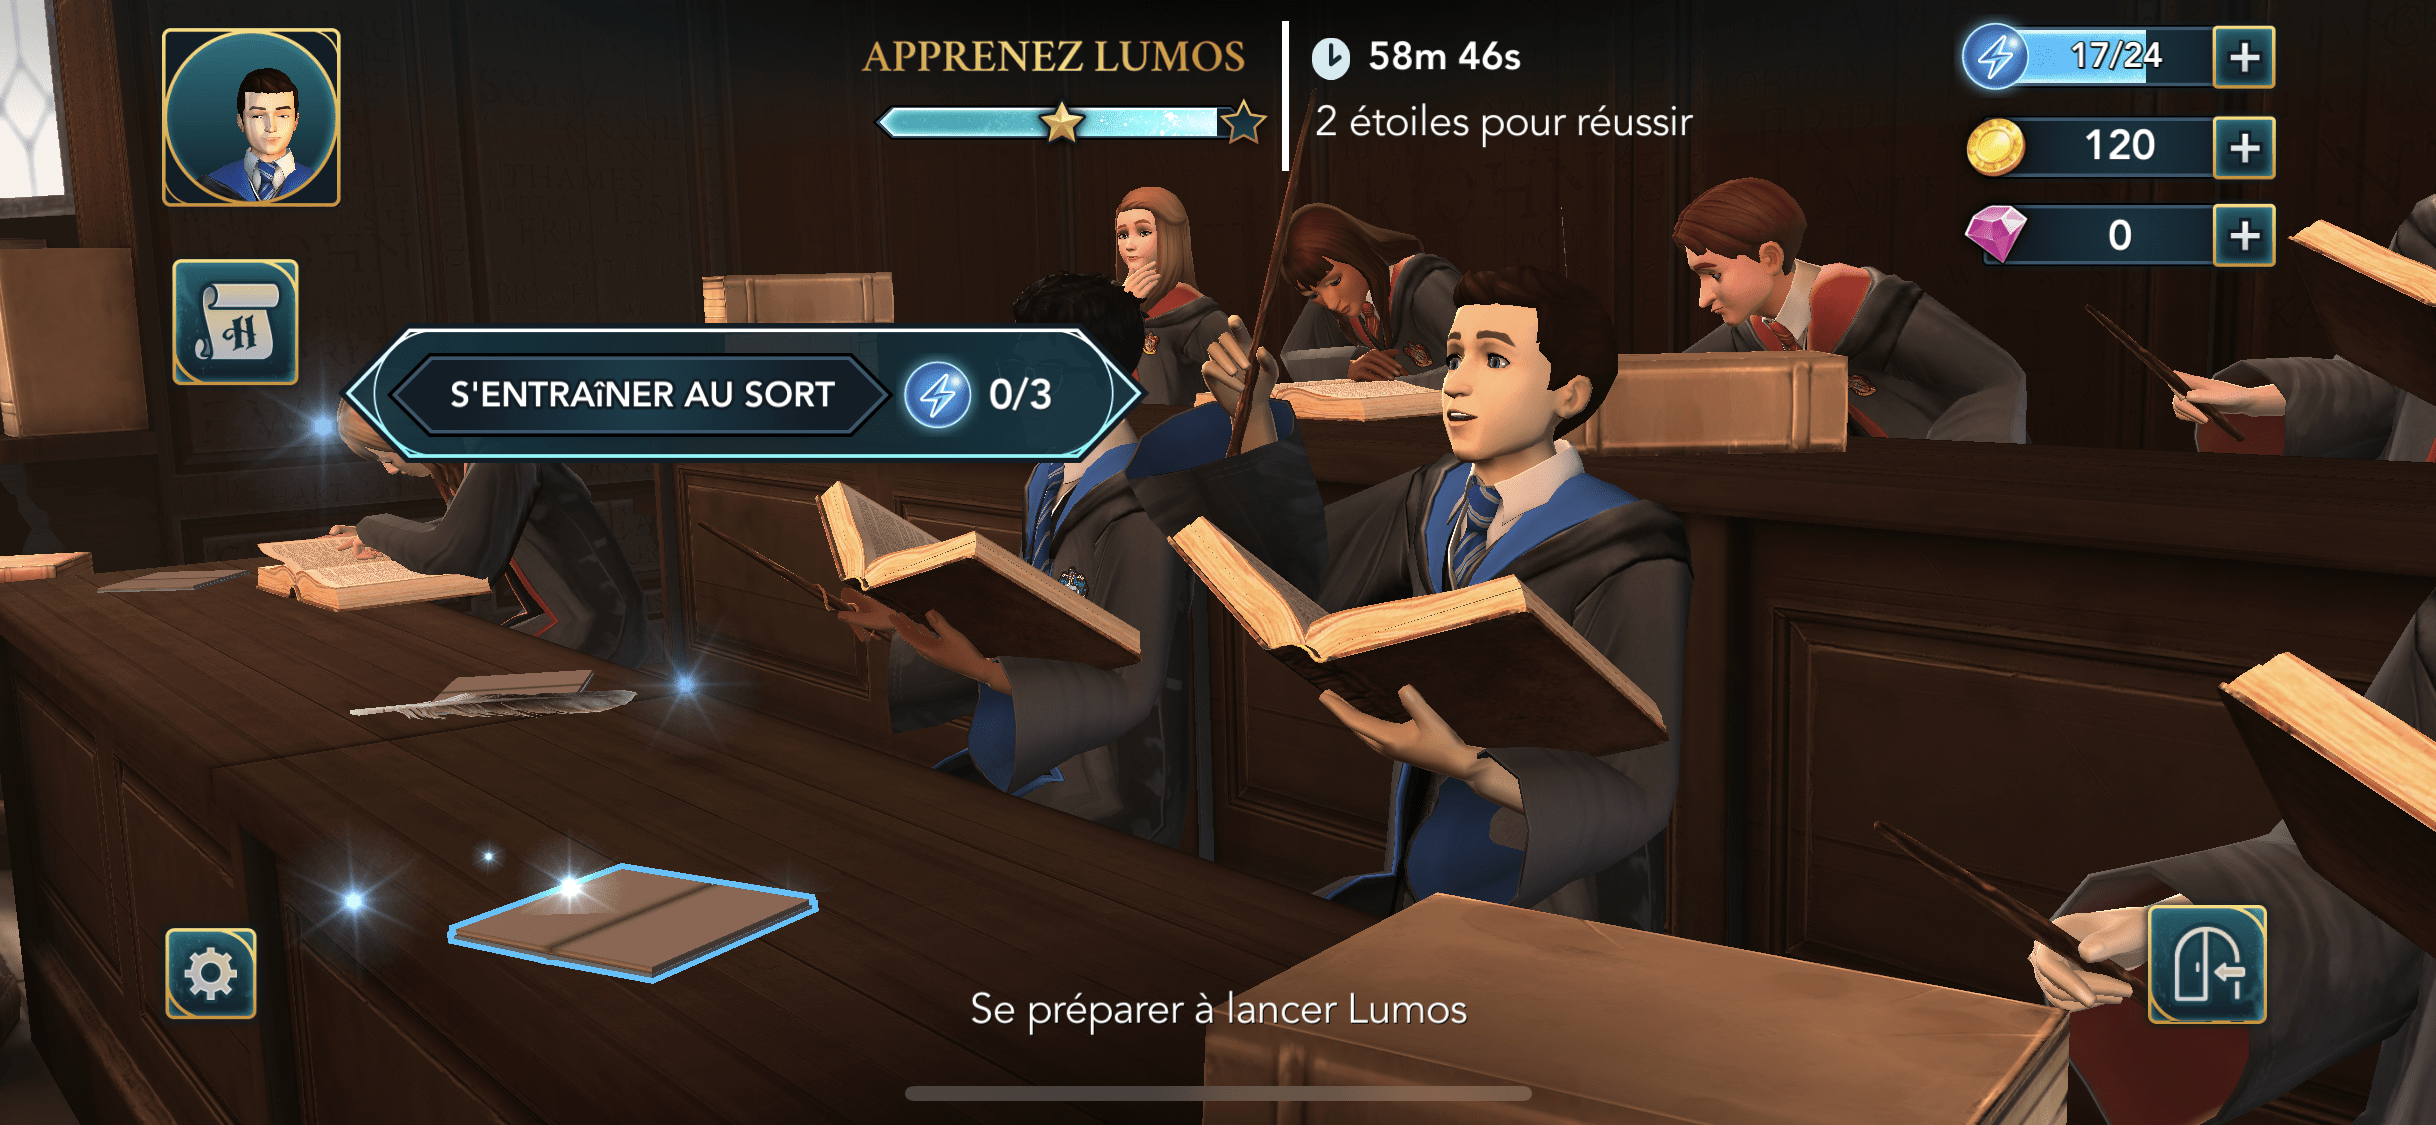 Harry Potter : Hogwarts Mystery est-il un bon jeu mobile ?